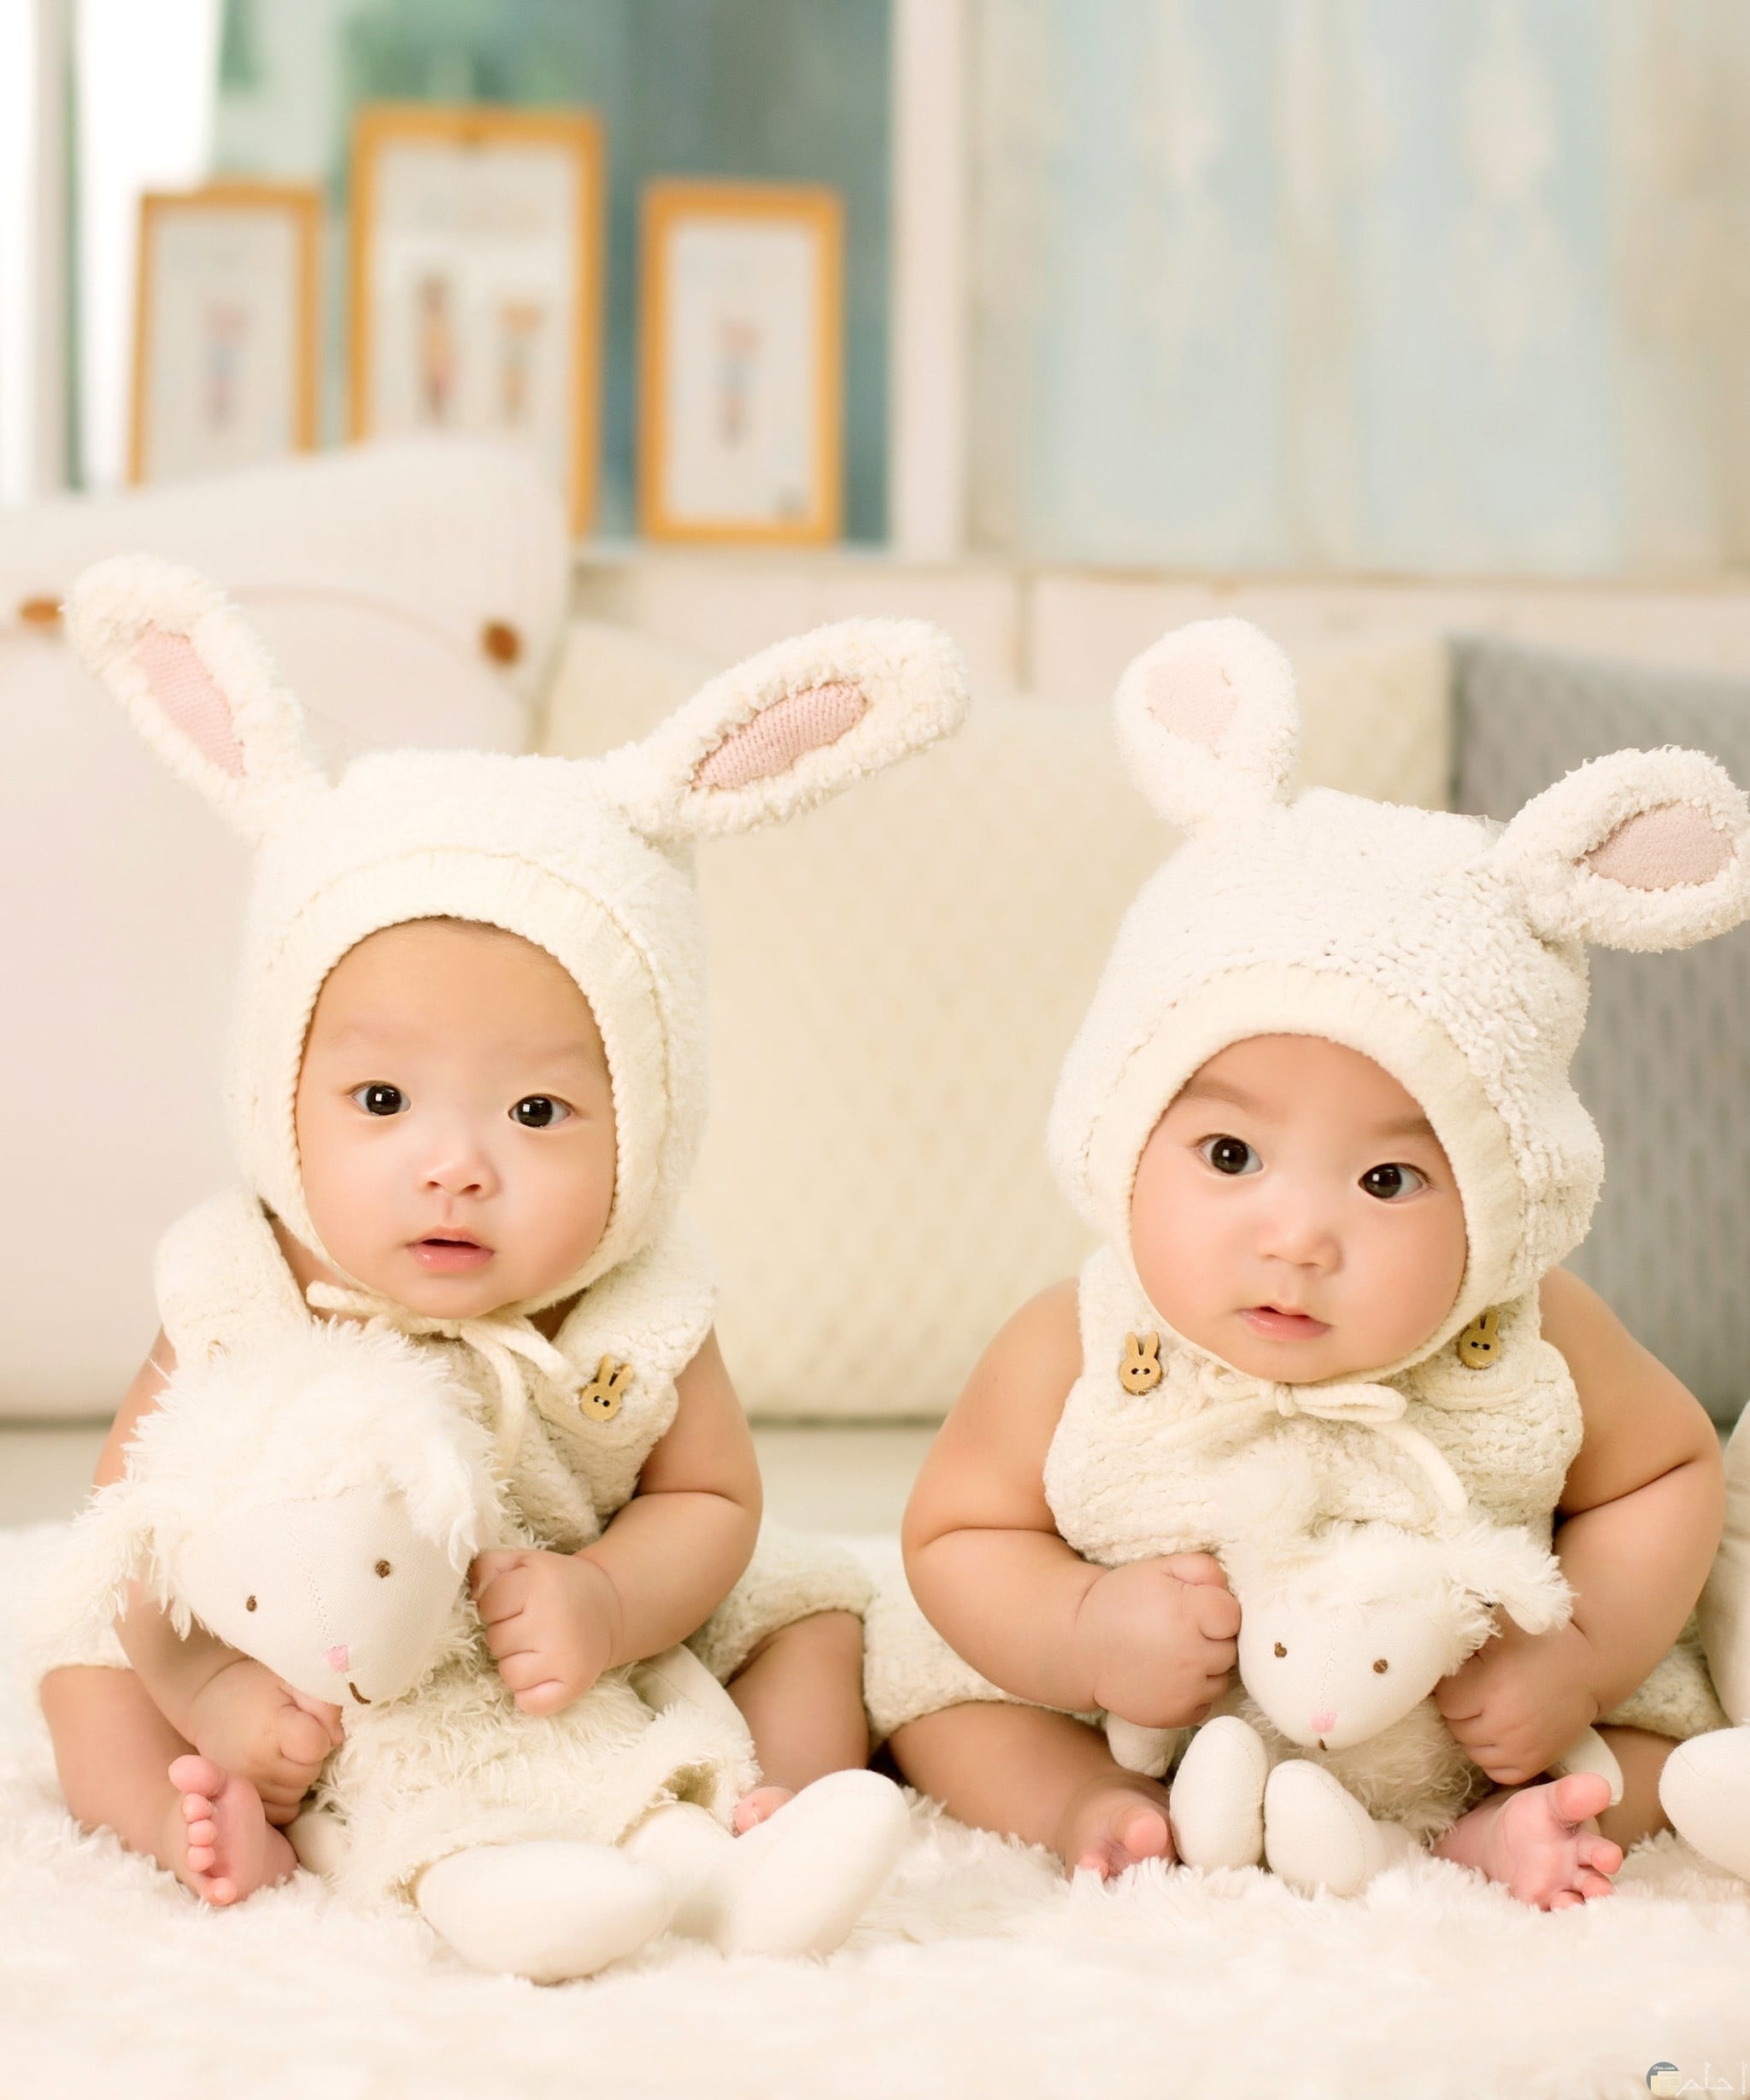 صور لأطفال صغار توائم كيوت يلبسون لبس أرنب جميل